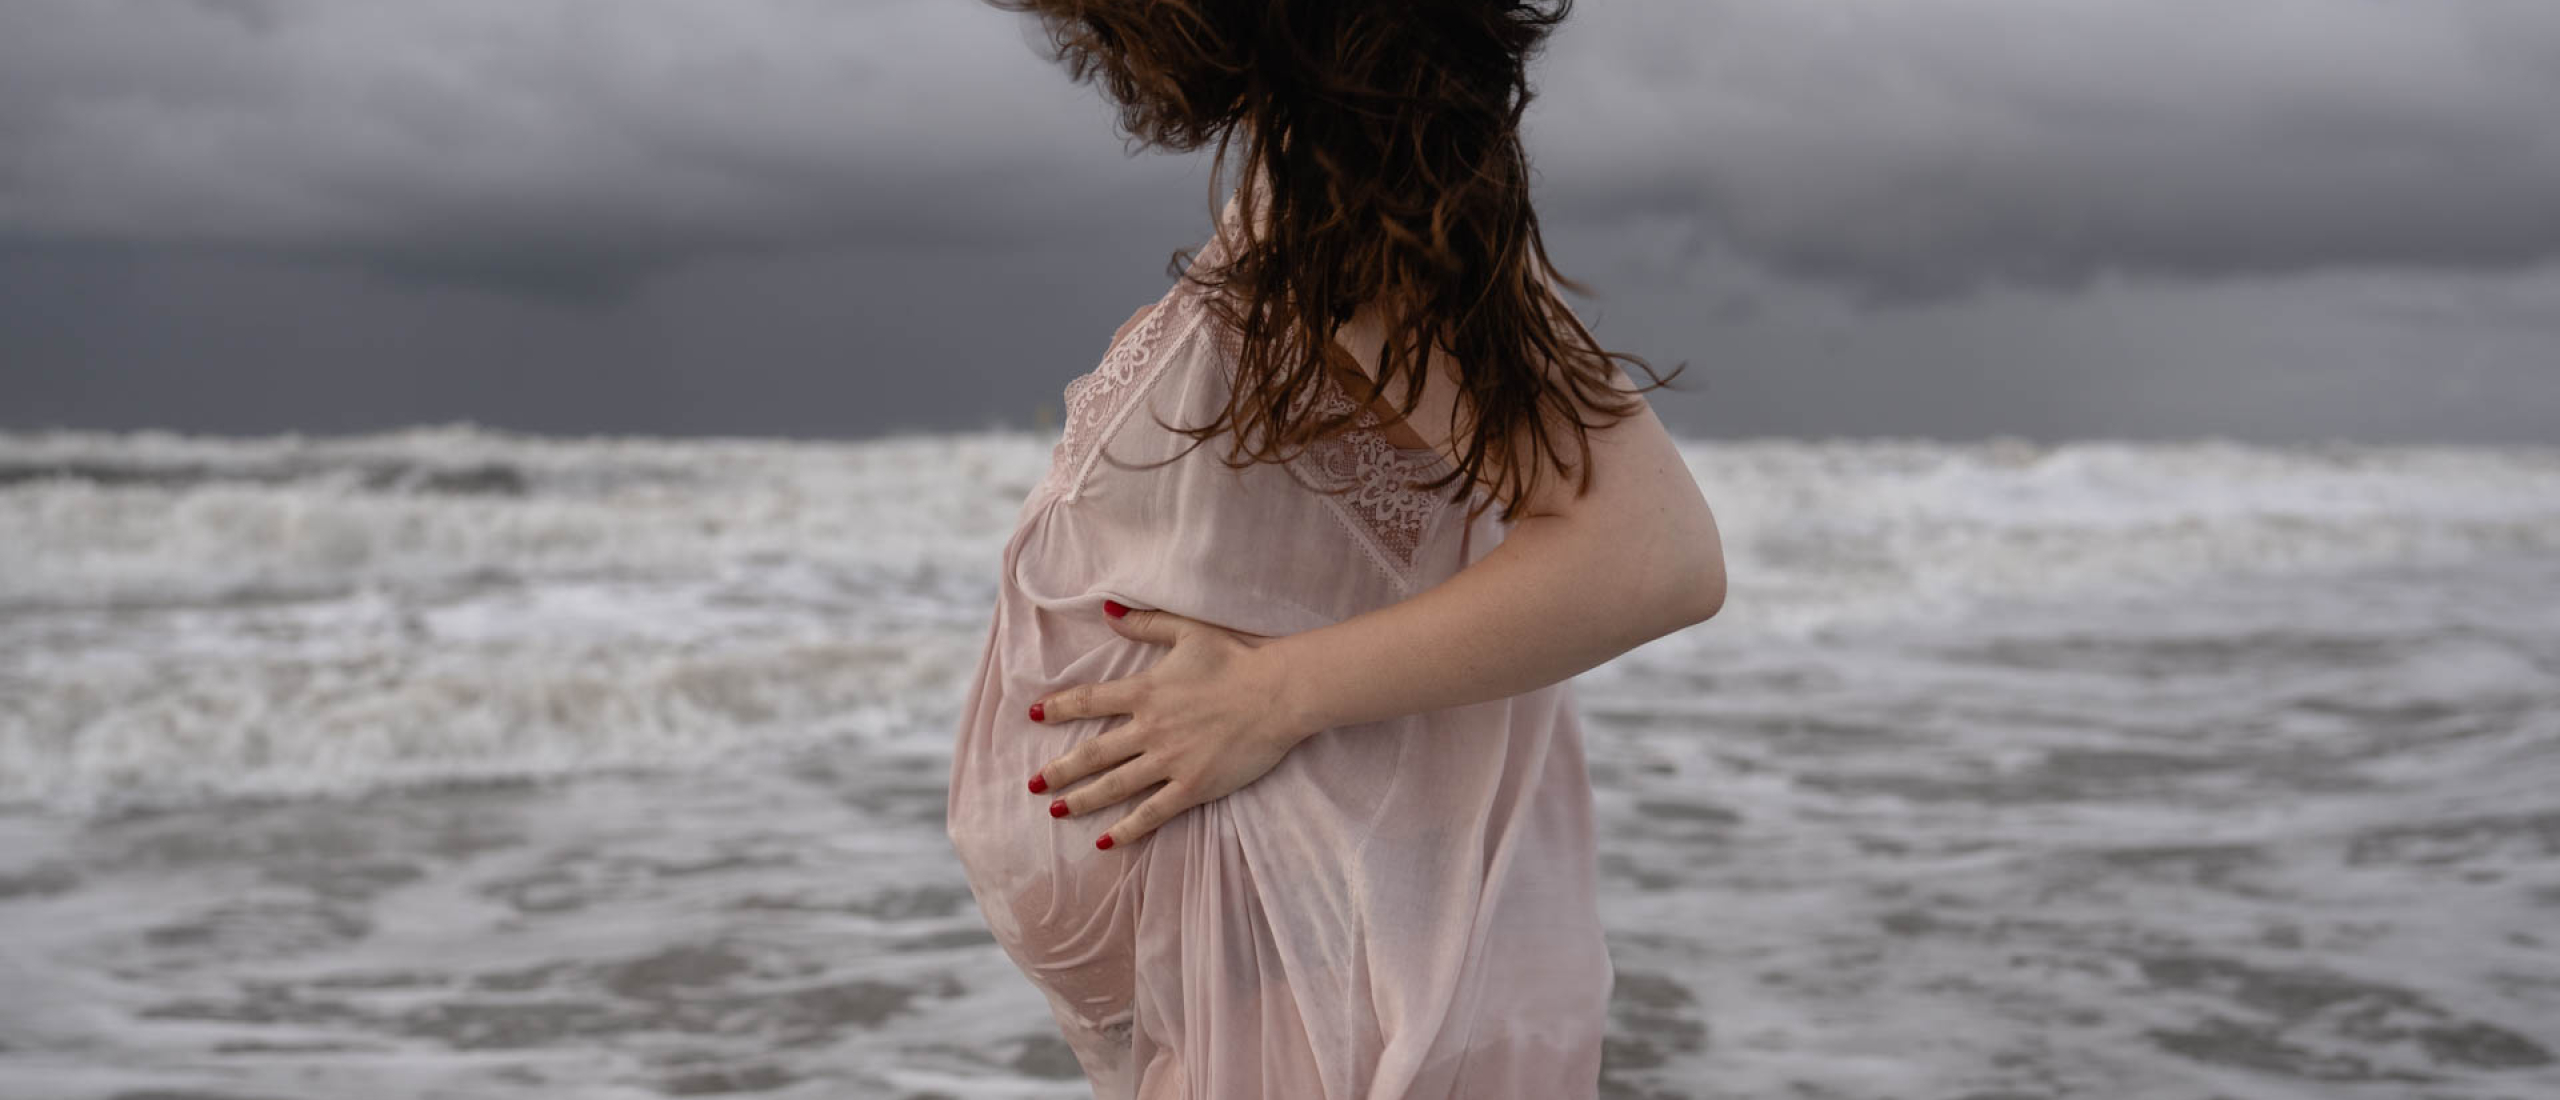 Toffe beelden van je zwangere buik in de woeste zee met zonsondergang